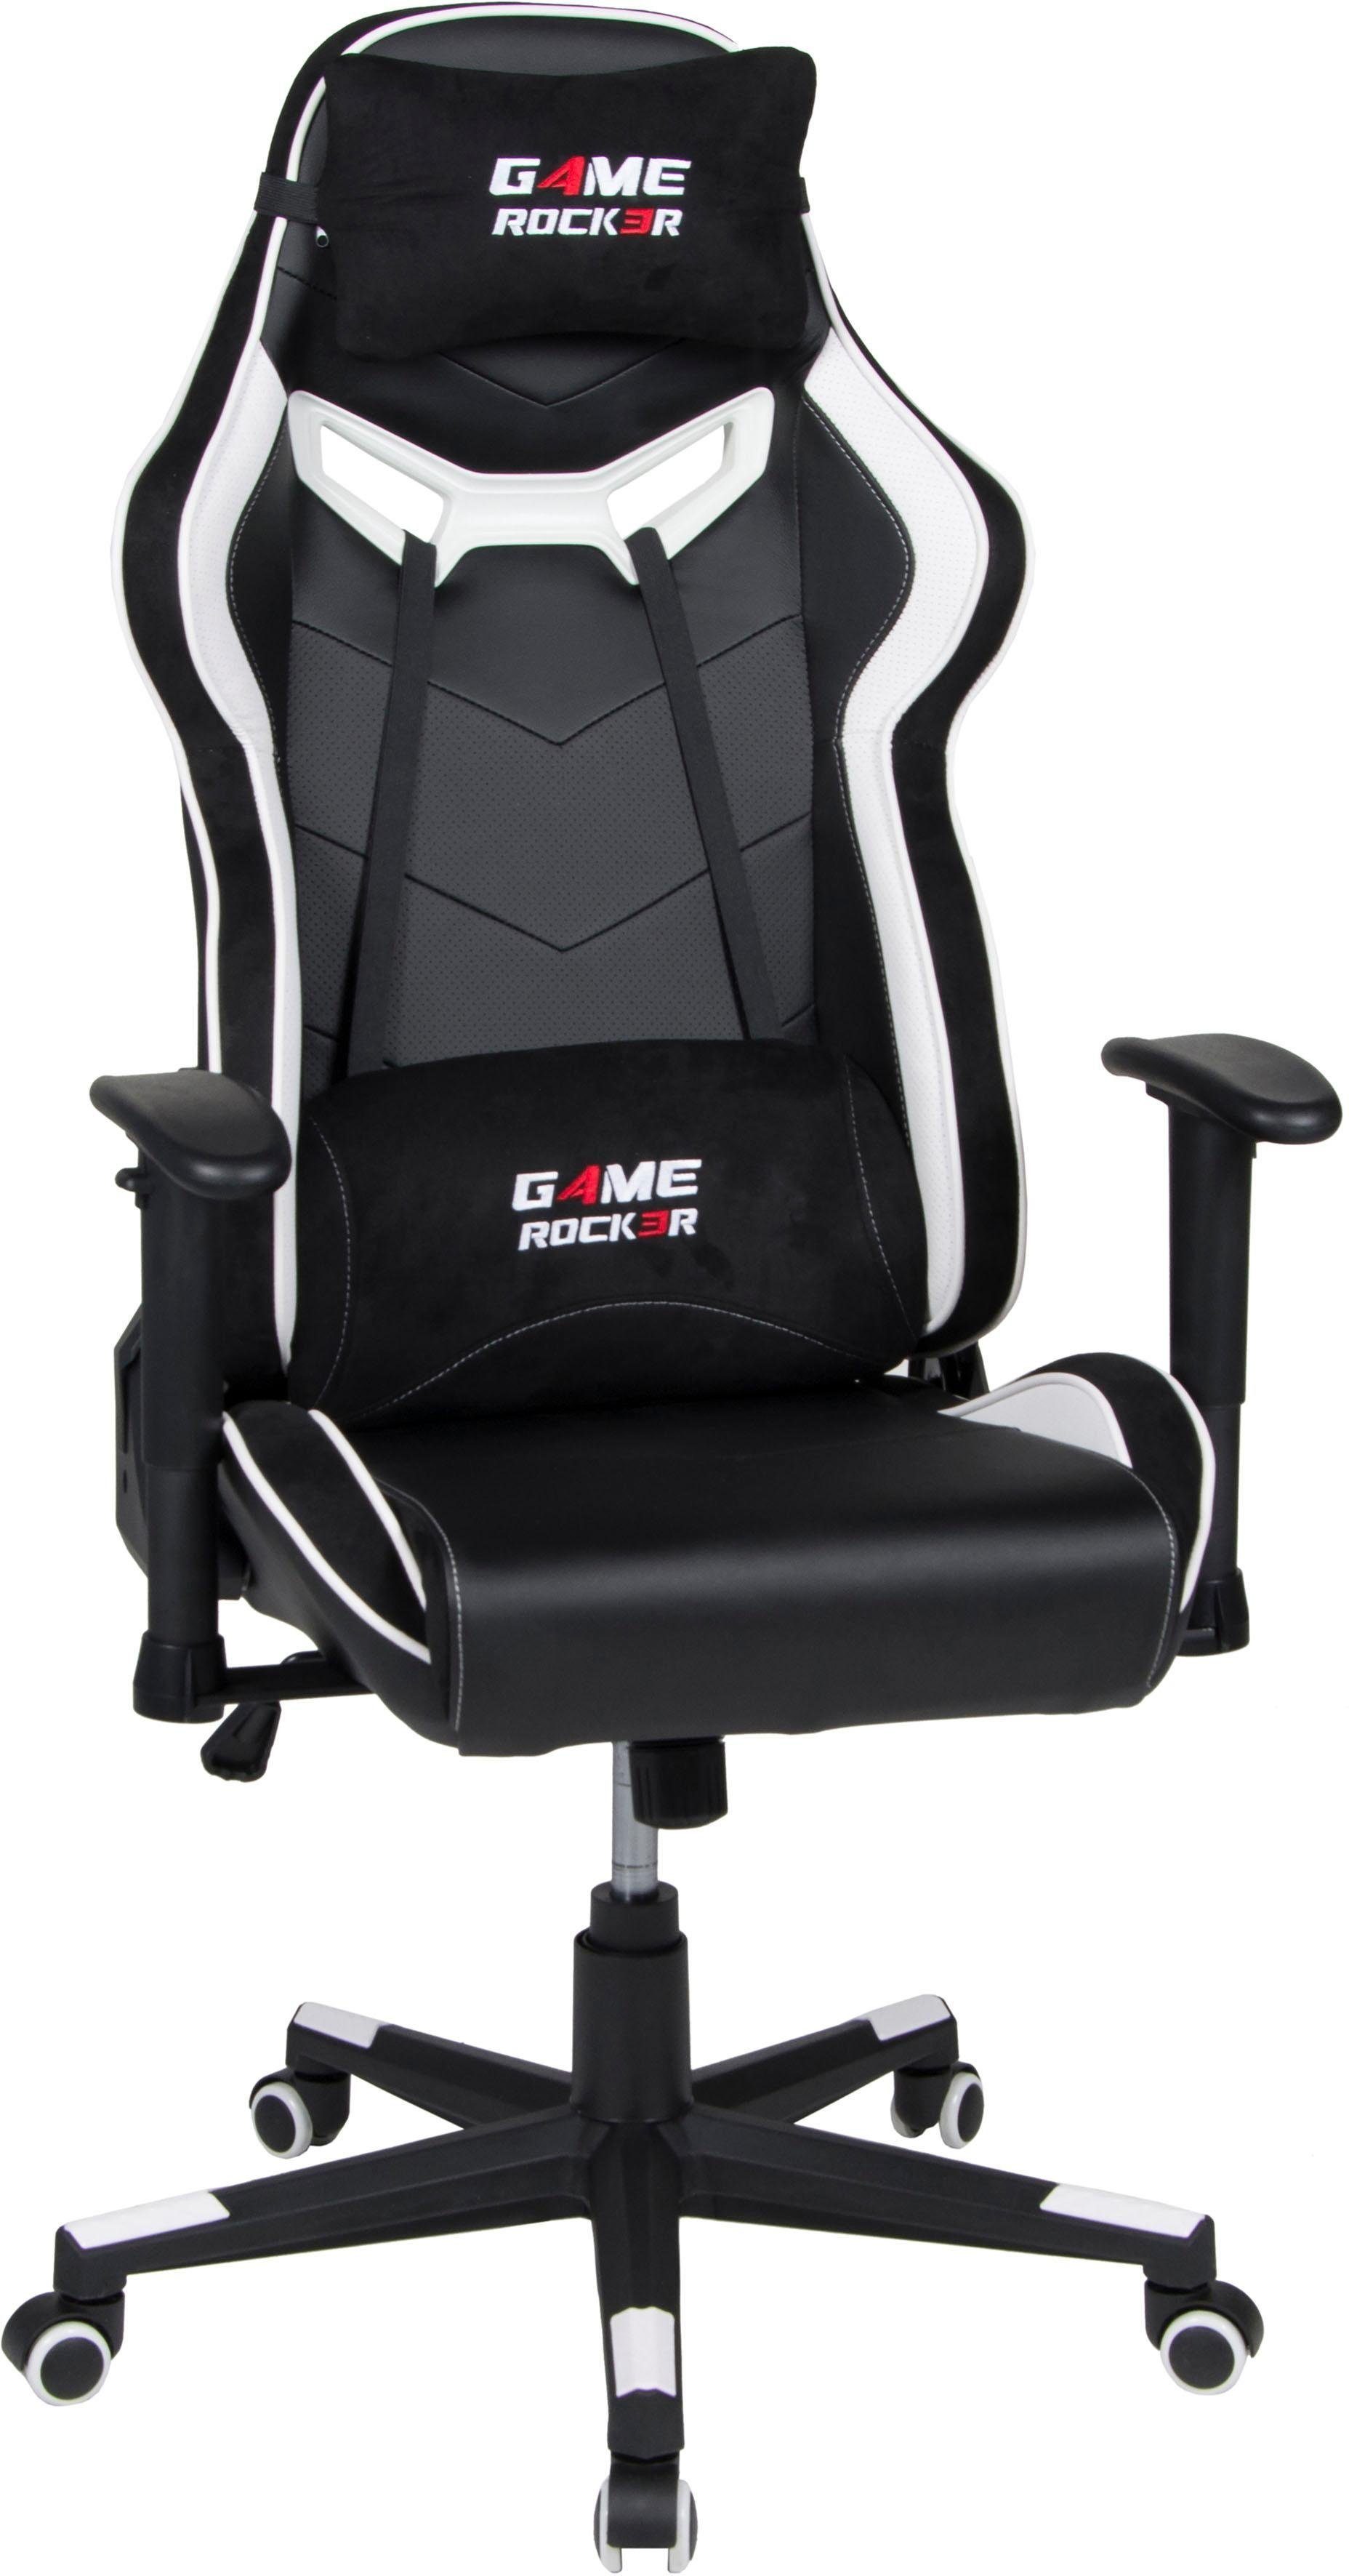 | | Duo schwarz/weiß Gaming-Stuhl G-30 schwarz/weiß schwarz/weiß Collection Game-Rocker